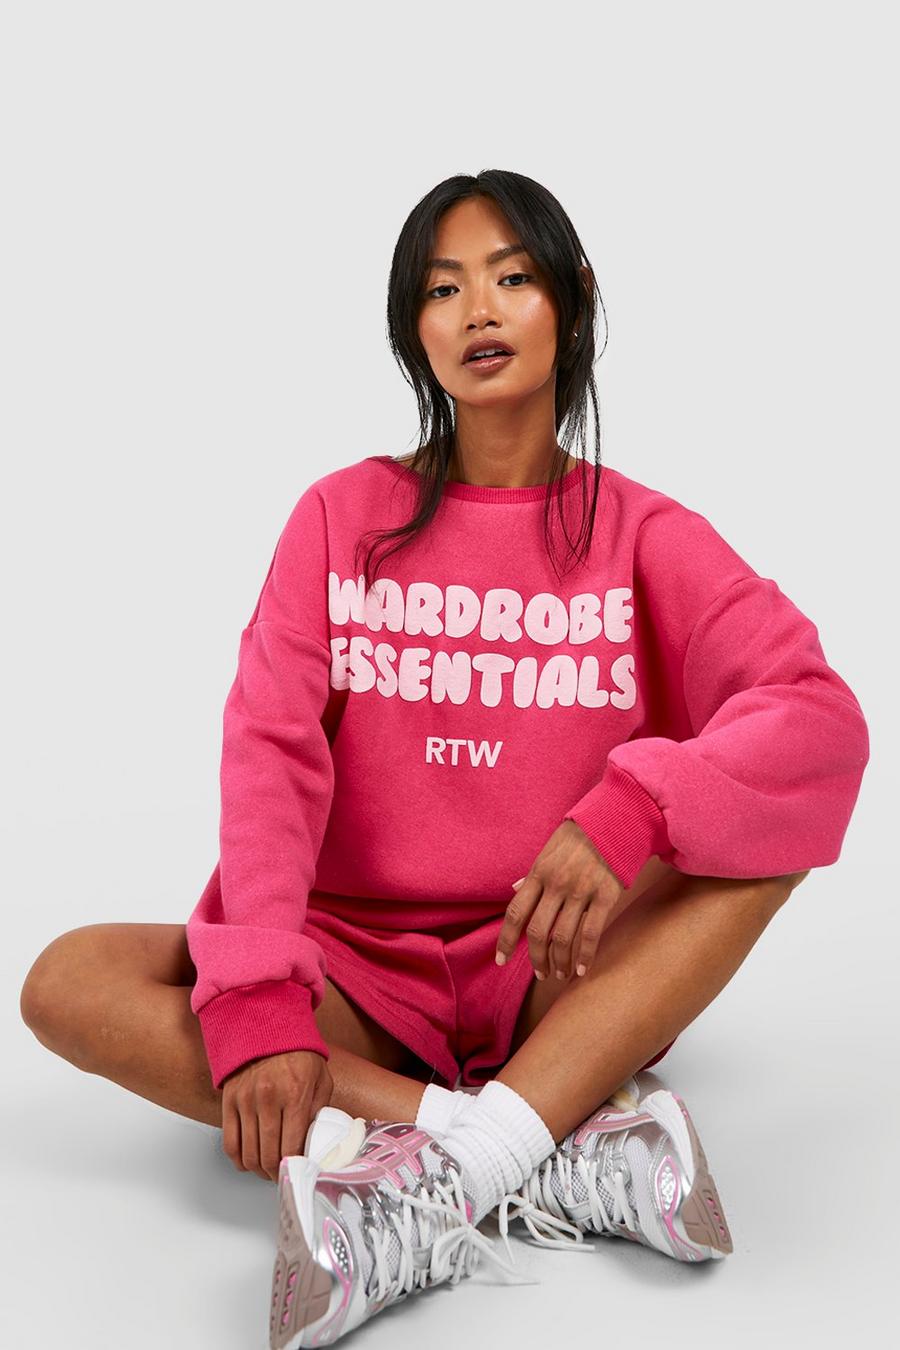 Kurzer Sweatshirt-Trainingsanzug mit Wardrobe Essentials Print, Hot pink